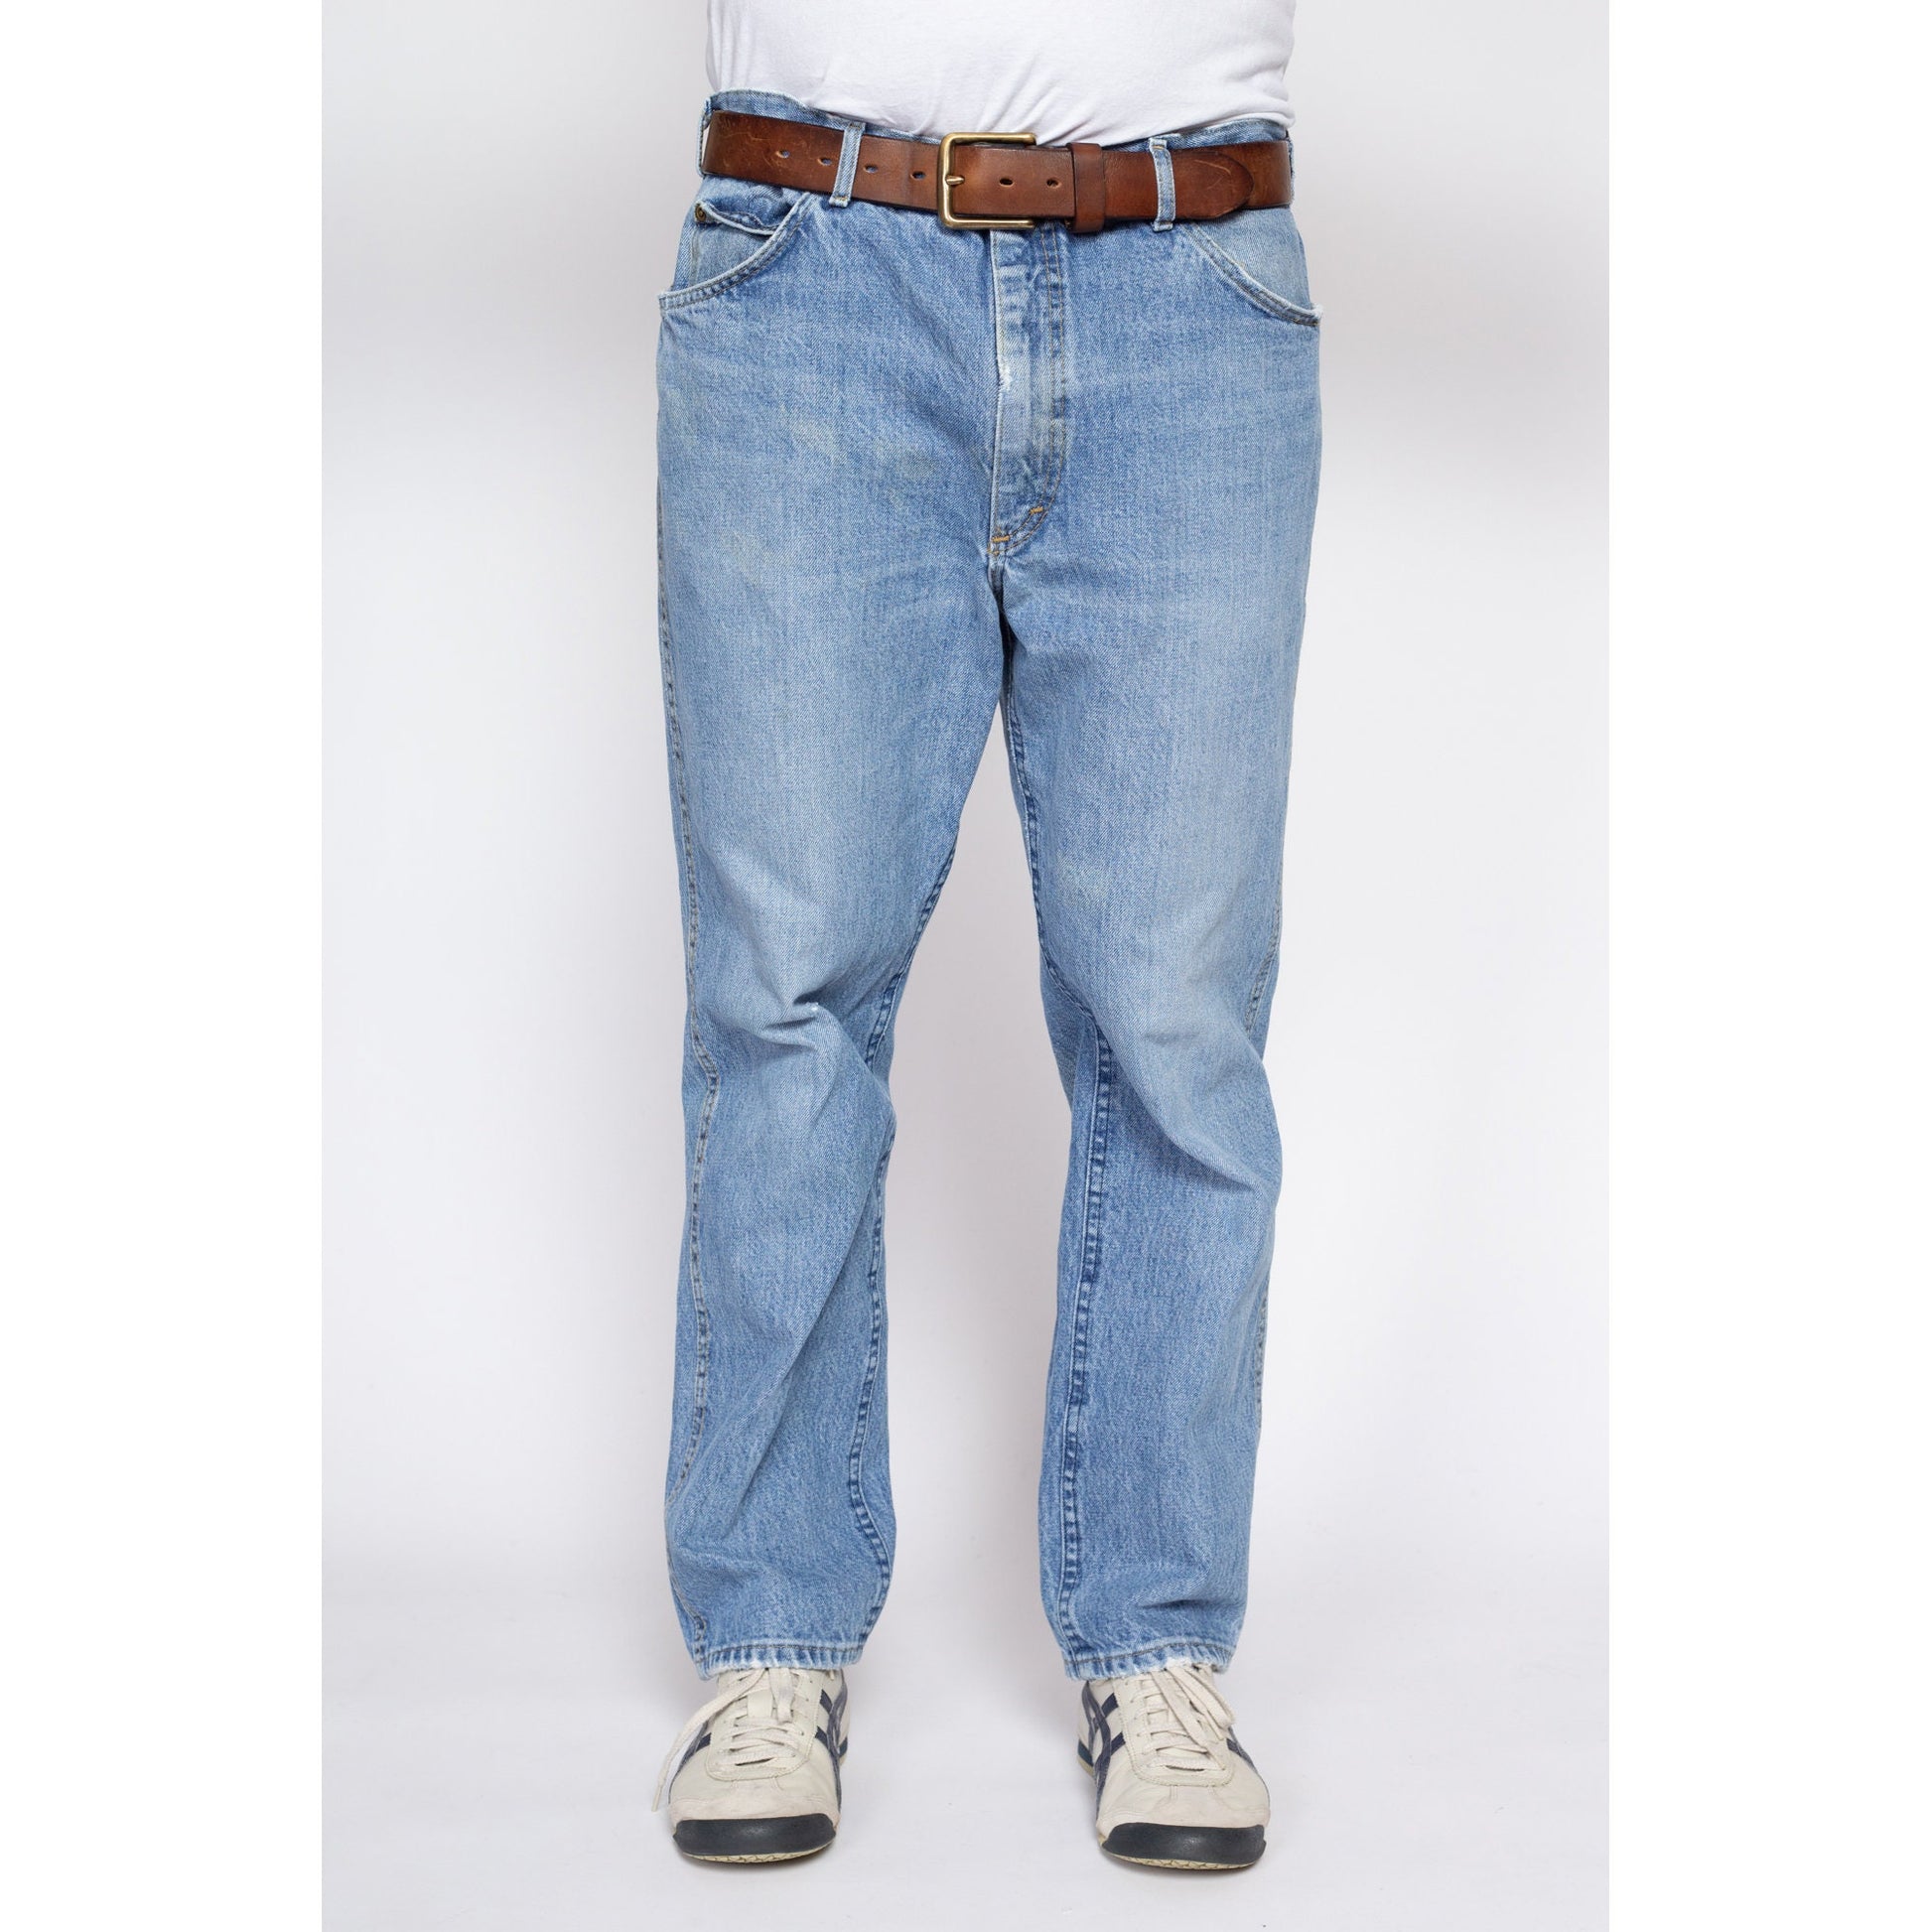 Denim Plain Men Jeans, Waist Size: 28 30 32 34 36 at Rs 420/piece